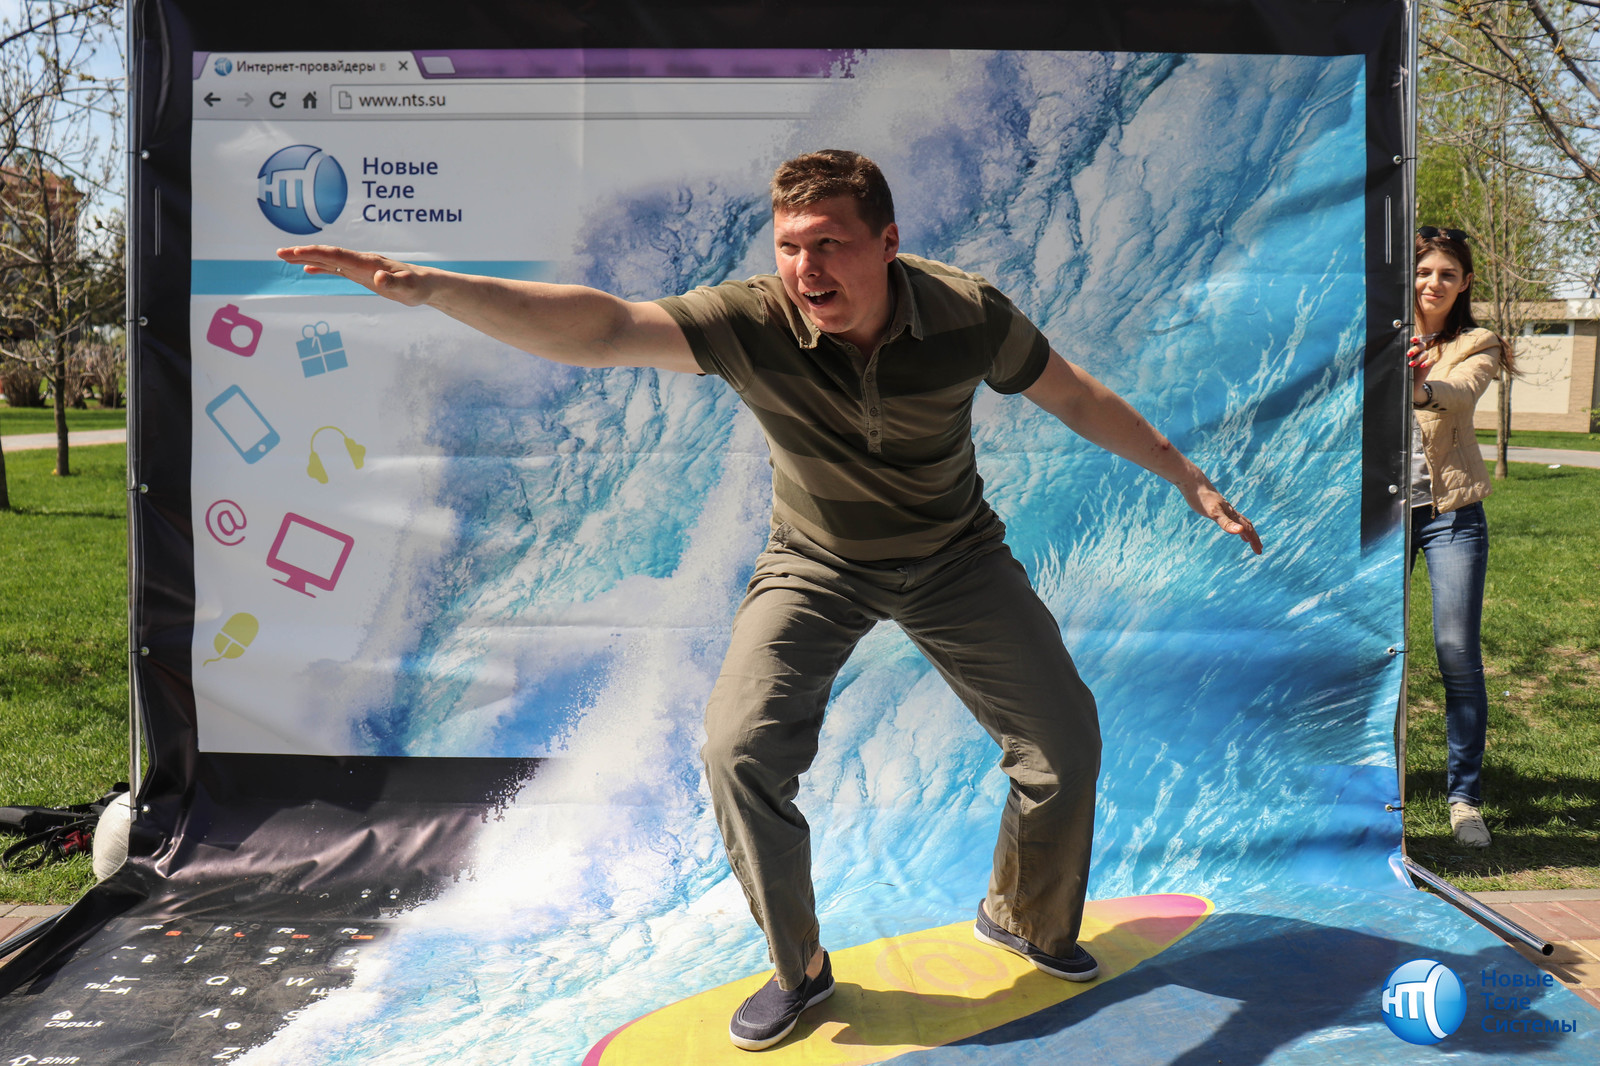 Surfing the internet is. Фотозона серфер. Фотозона с доской для серфинга. Сёрфинг в интернете. Интернет серфер.